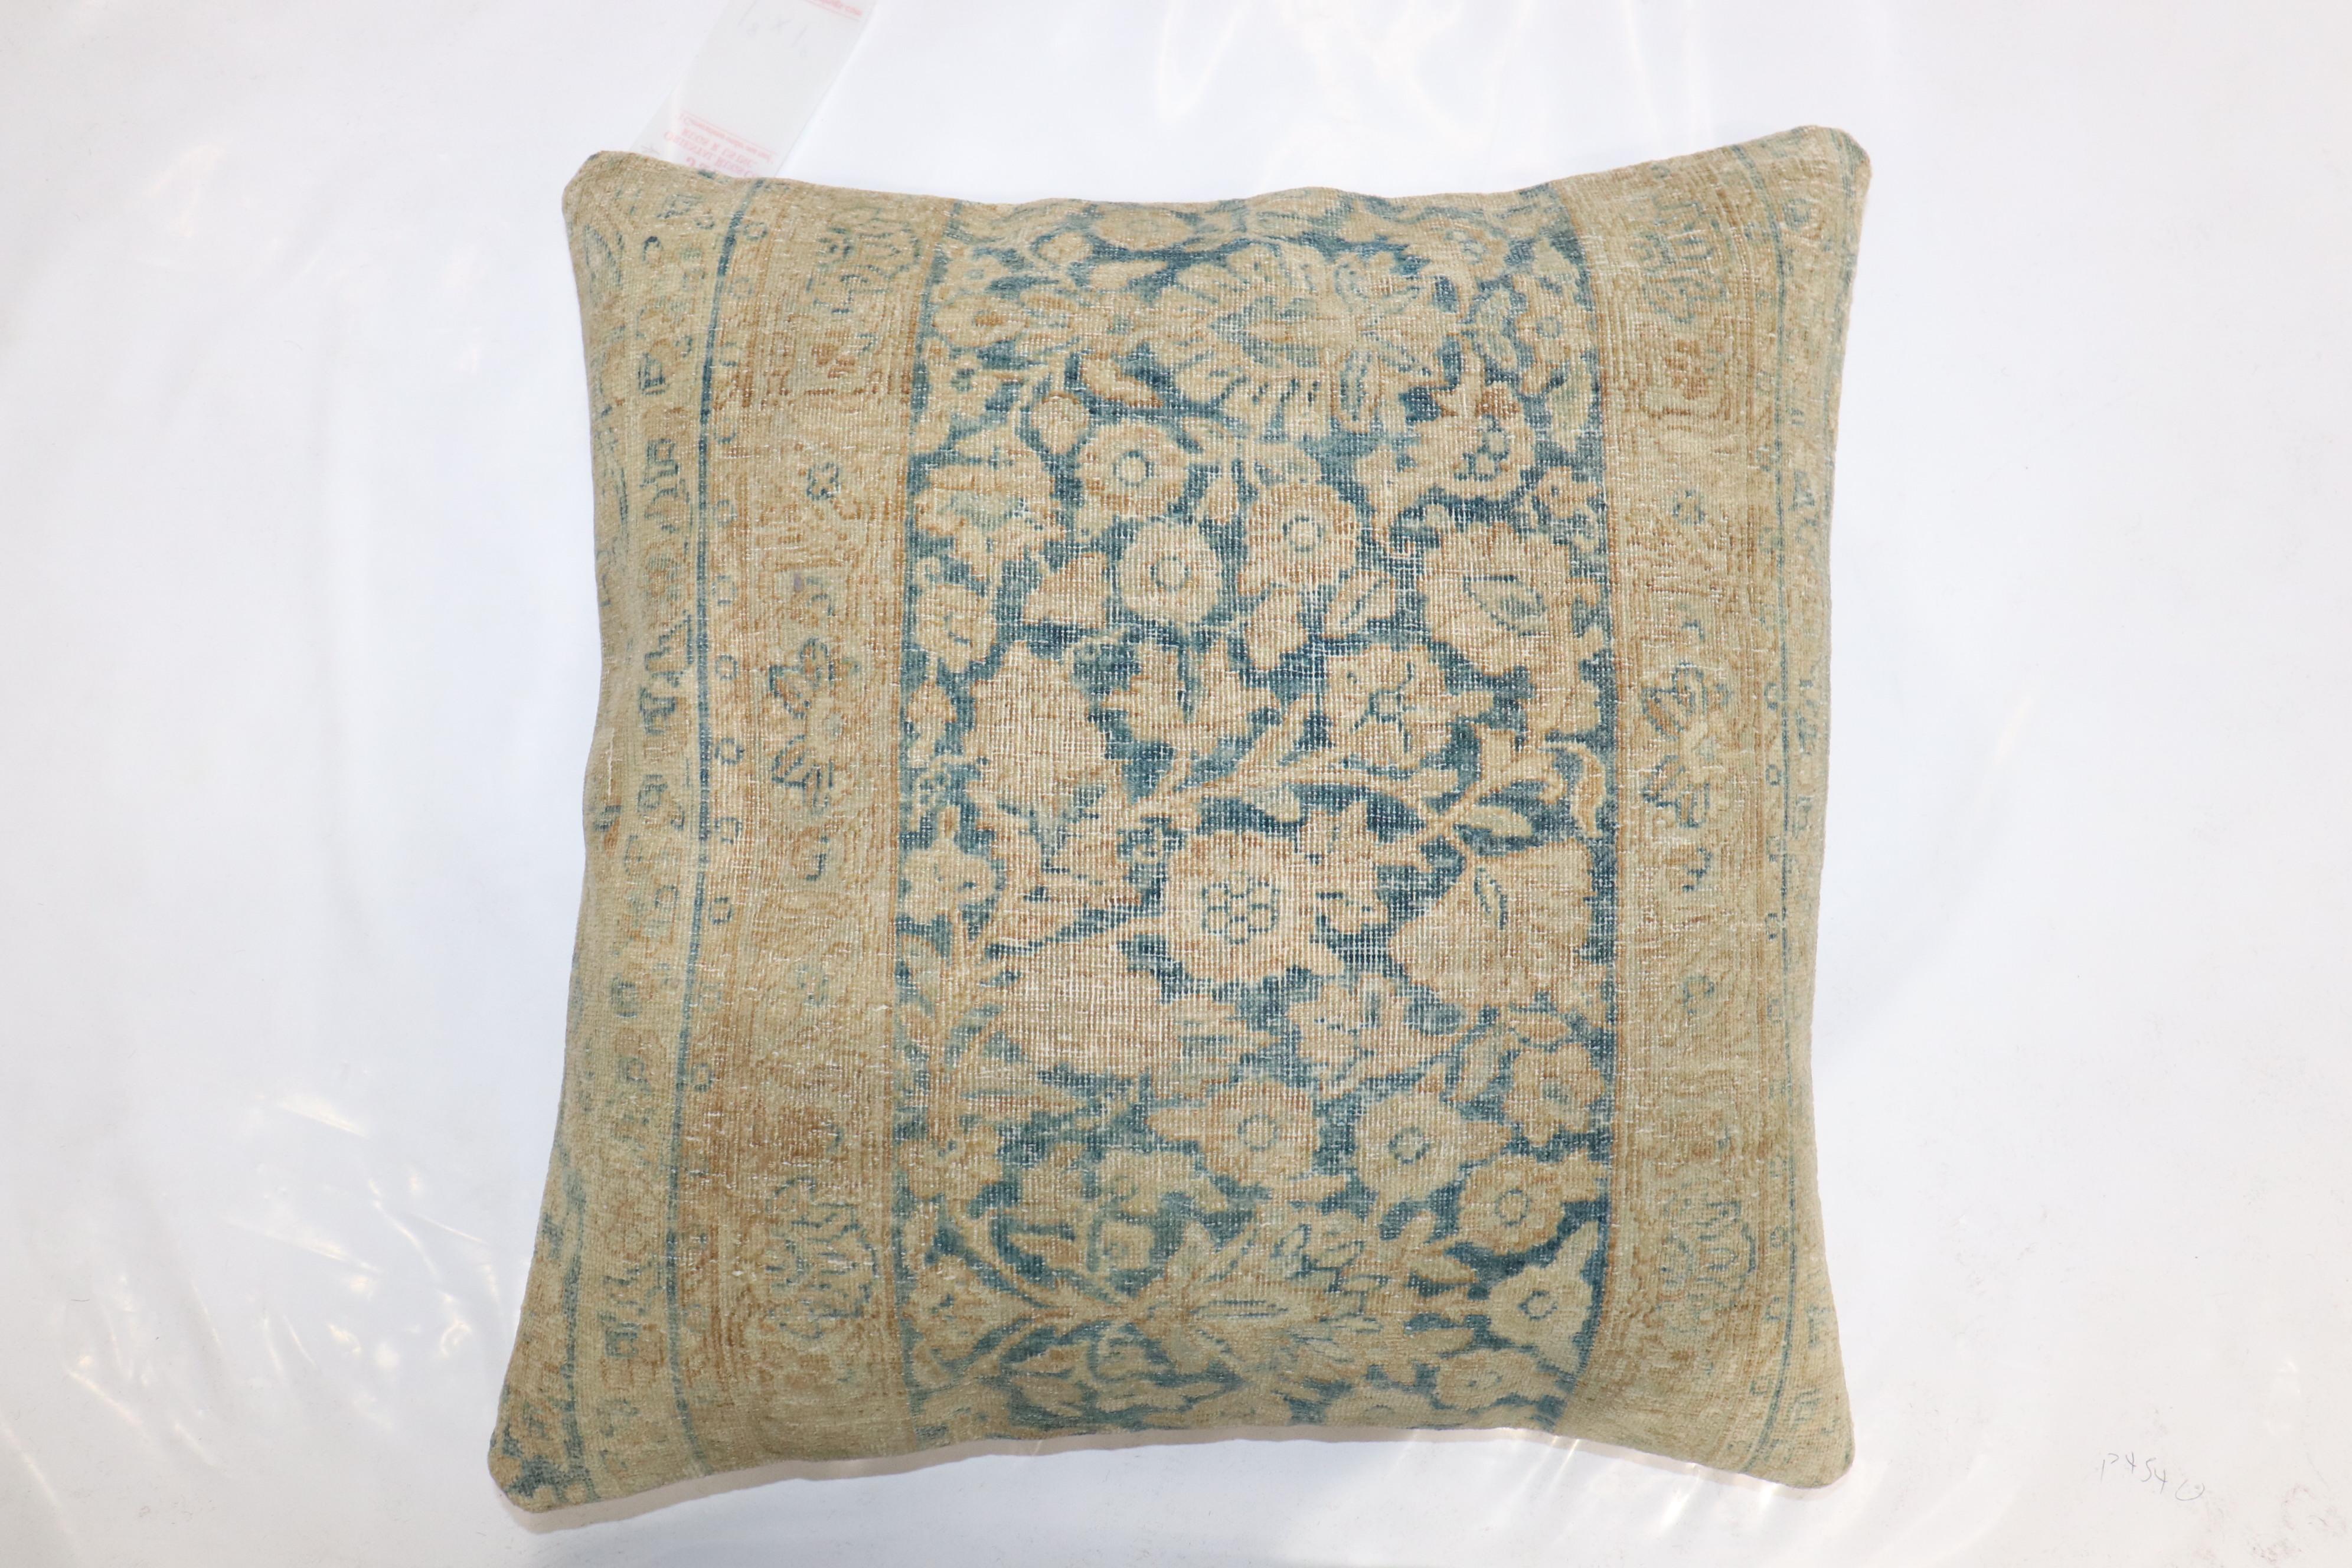 Oreiller réalisé à partir d'un tapis persan Kerman du XIXe siècle. Insert de remplissage et fermeture à glissière fournis

Mesures : 20